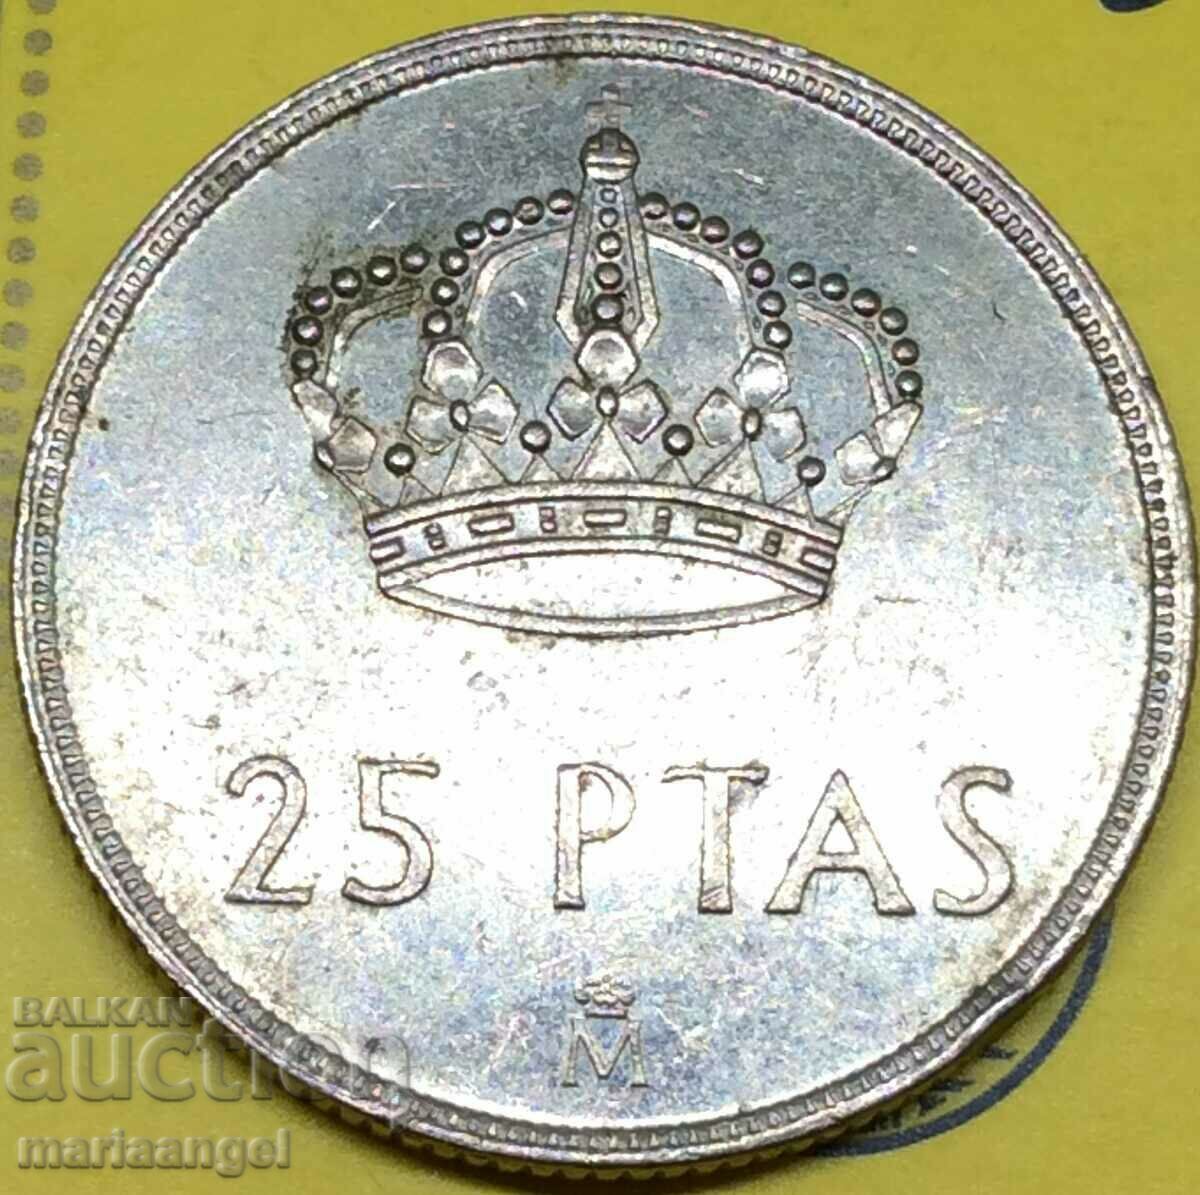 Spain 25 Pesetas 1984 King Juan Carlos I